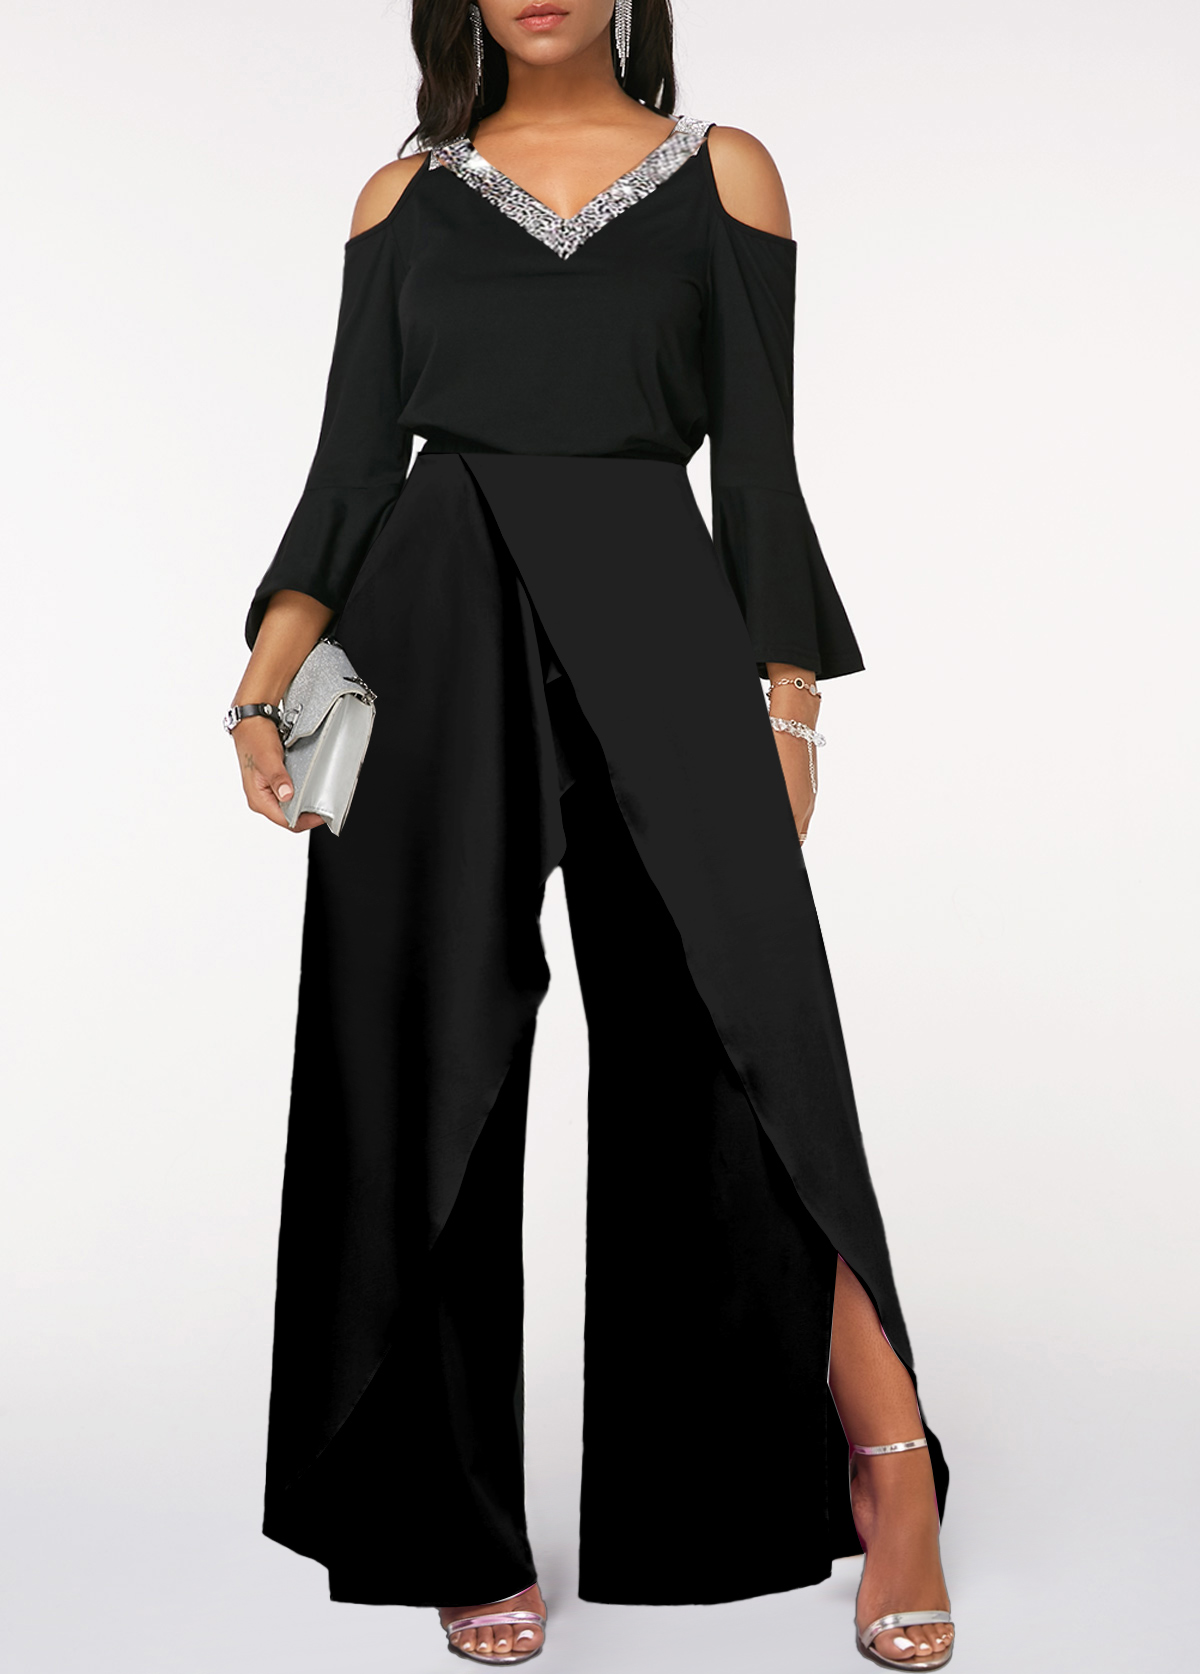 Sequin Long Sleeve Black V Neck Jumpsuit